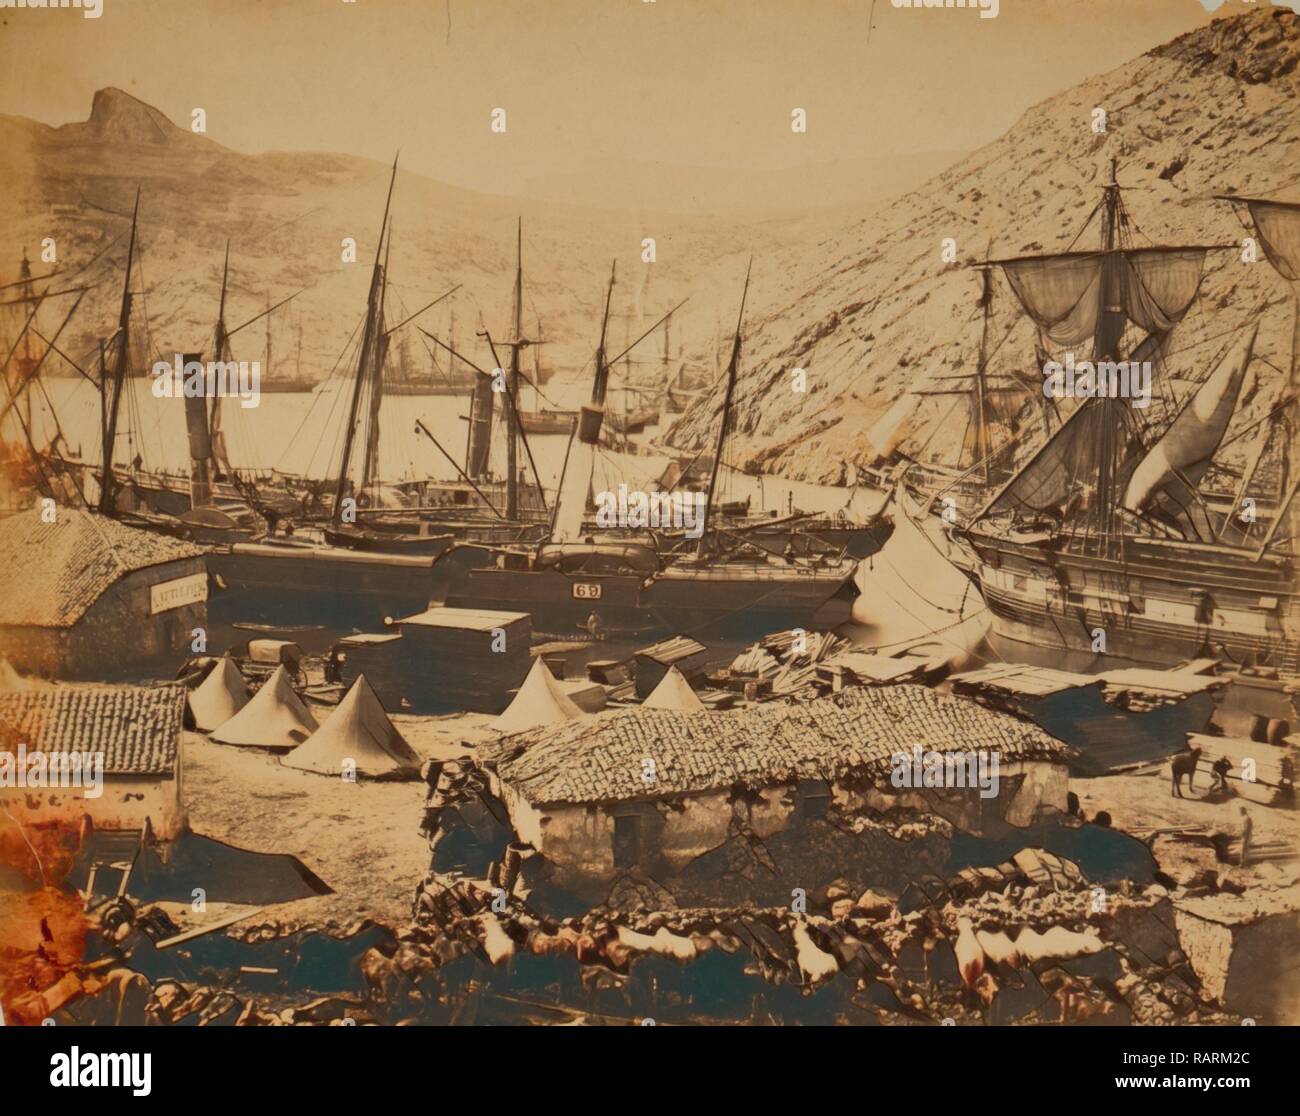 La baie de cosaque, Balaklava, guerre de Crimée, 1853-1856, Roger Fenton guerre historique photo de la campagne. Repensé Banque D'Images